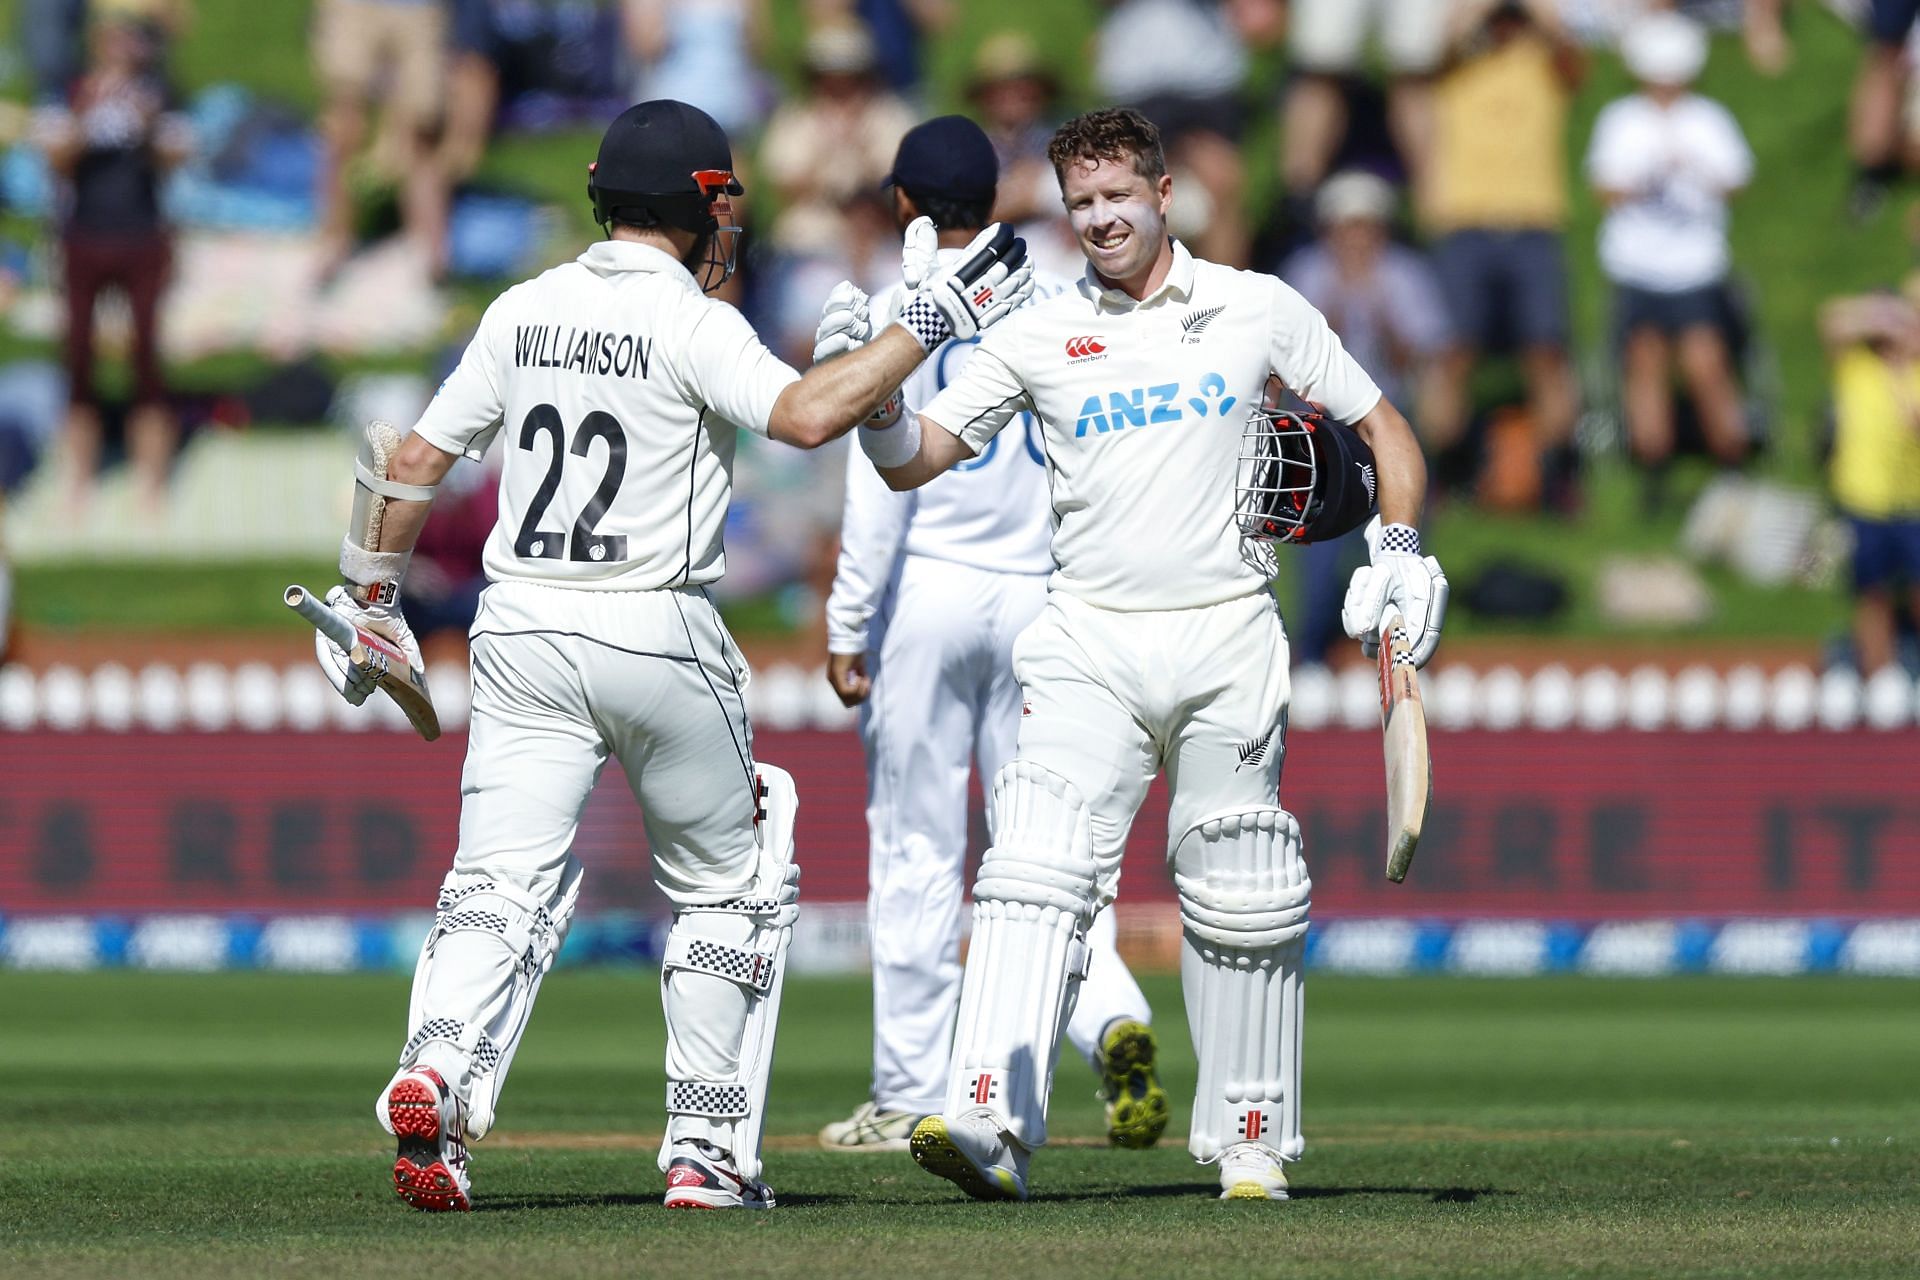 New Zealand v Sri Lanka - 2nd Test: Day 2